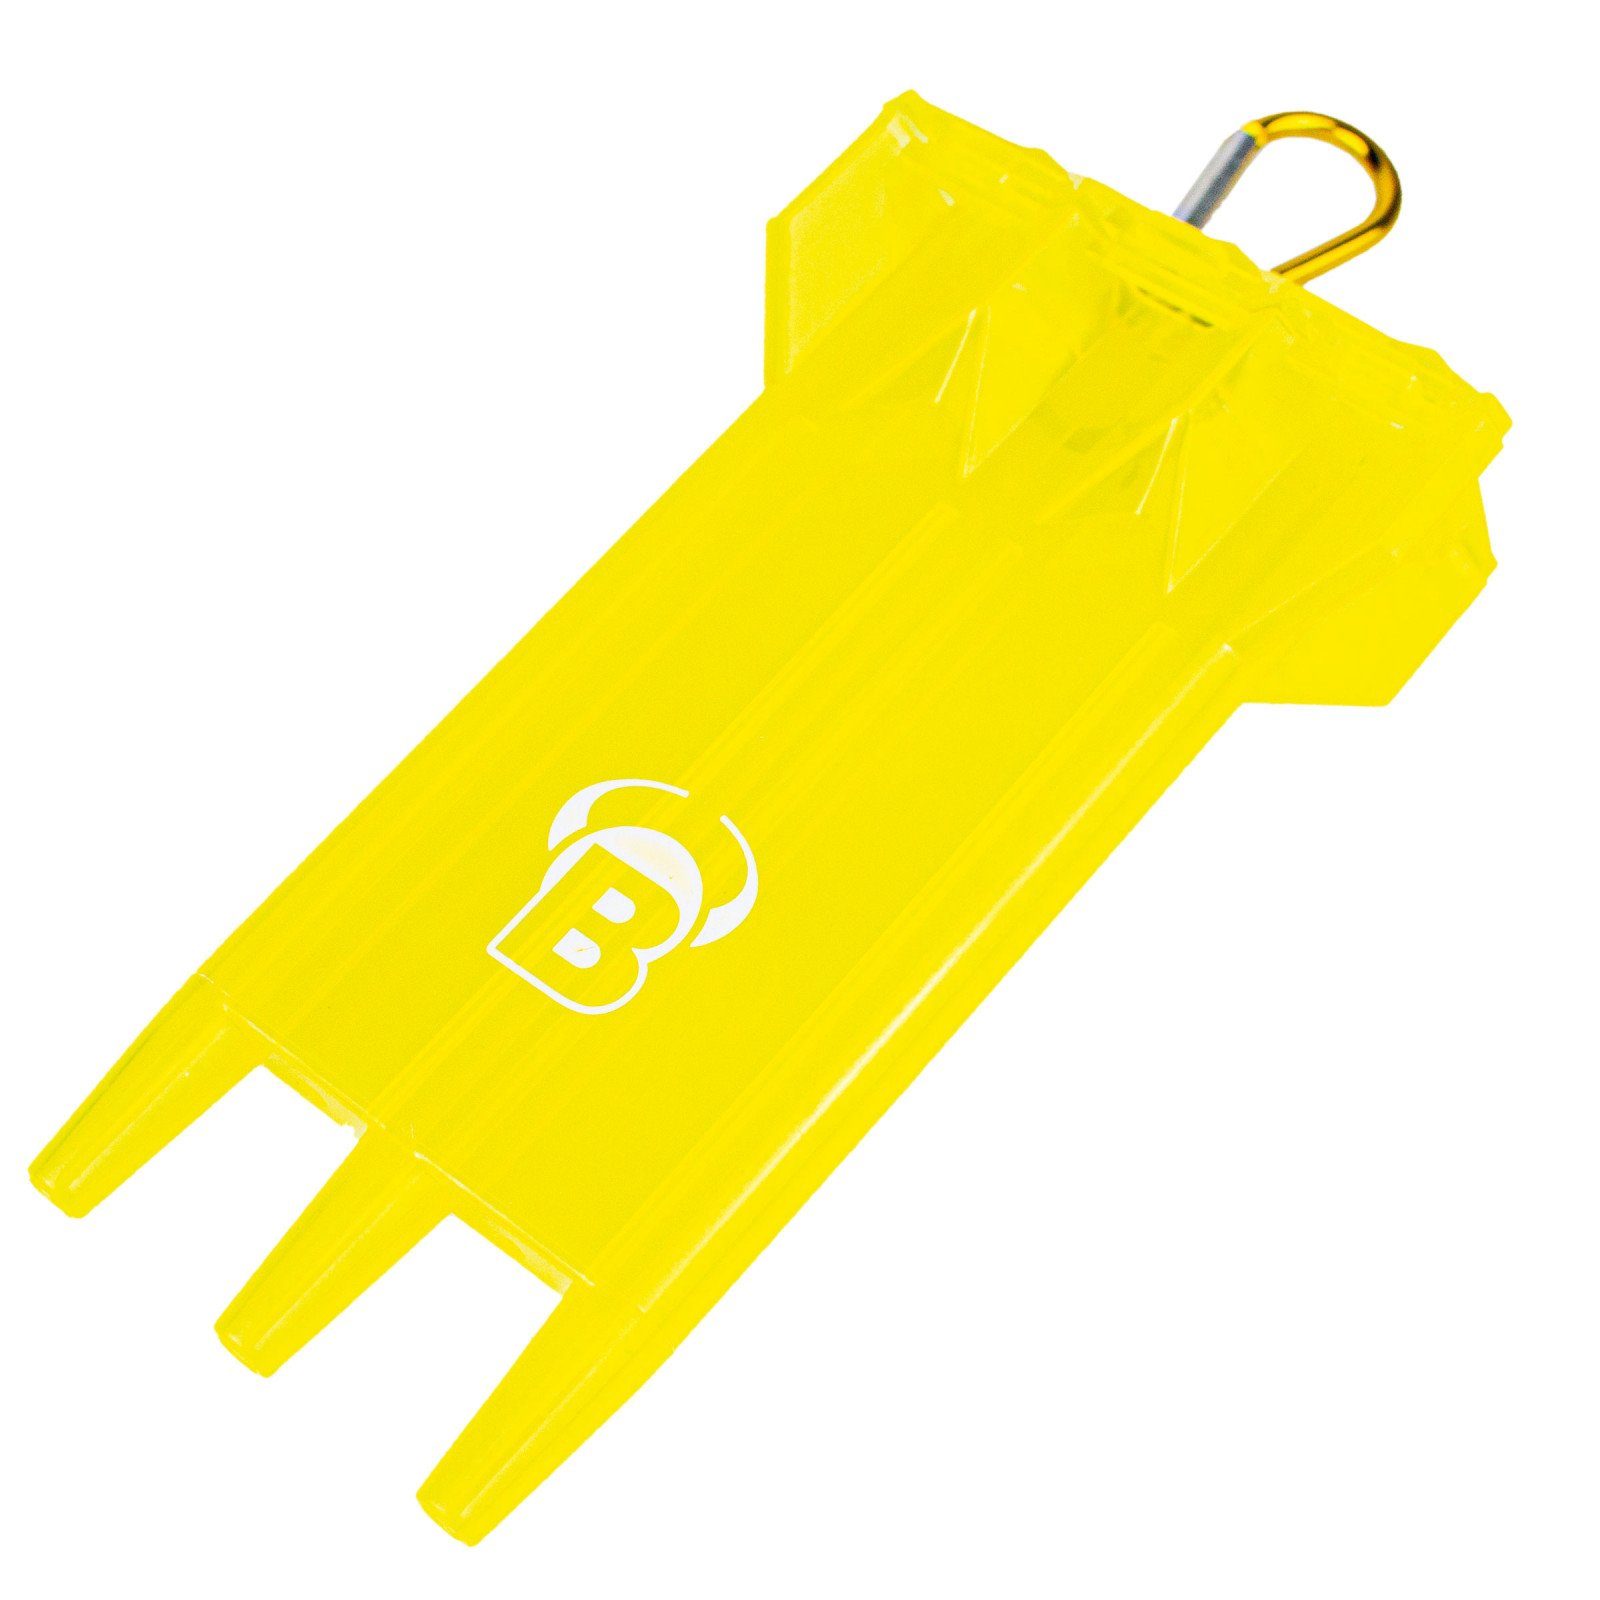 BULL'S Dartpfeil ACRA X yellow Dartcase